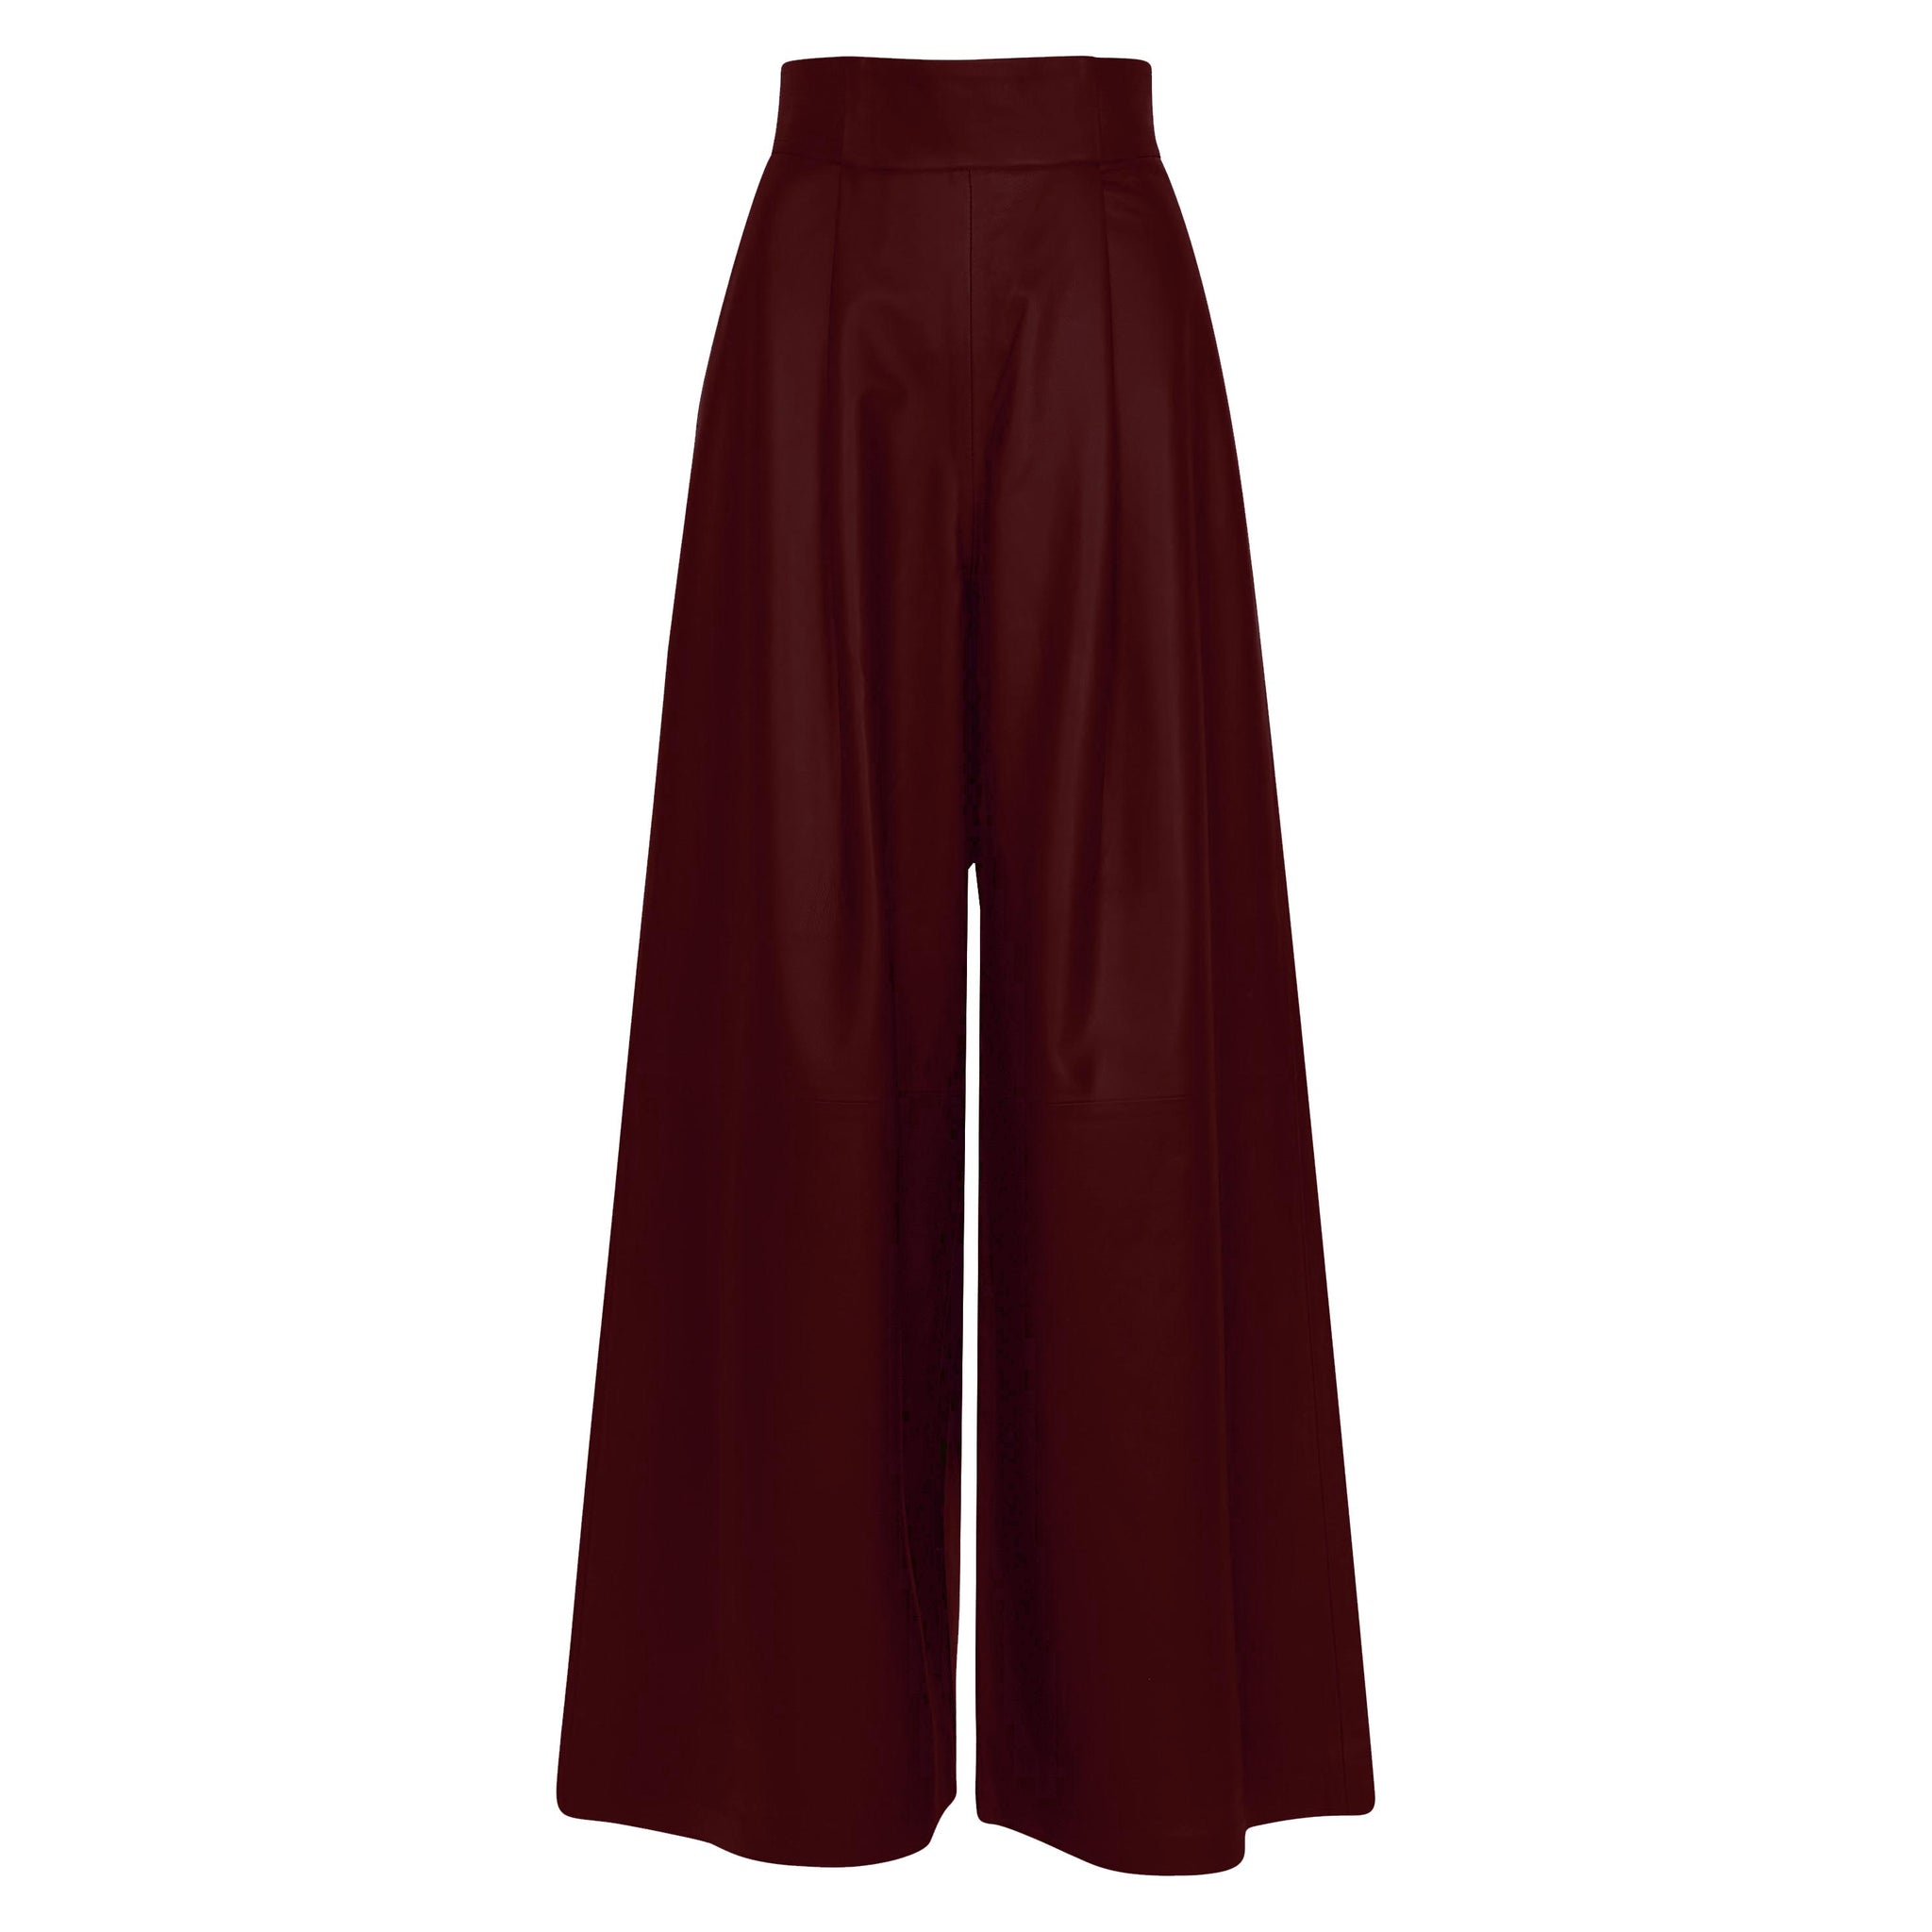 Buy Gloria Vanderbilt Women's Misses Amanda Ponte High Rise Knit Pant,  Black, 6 Regular at Amazon.in